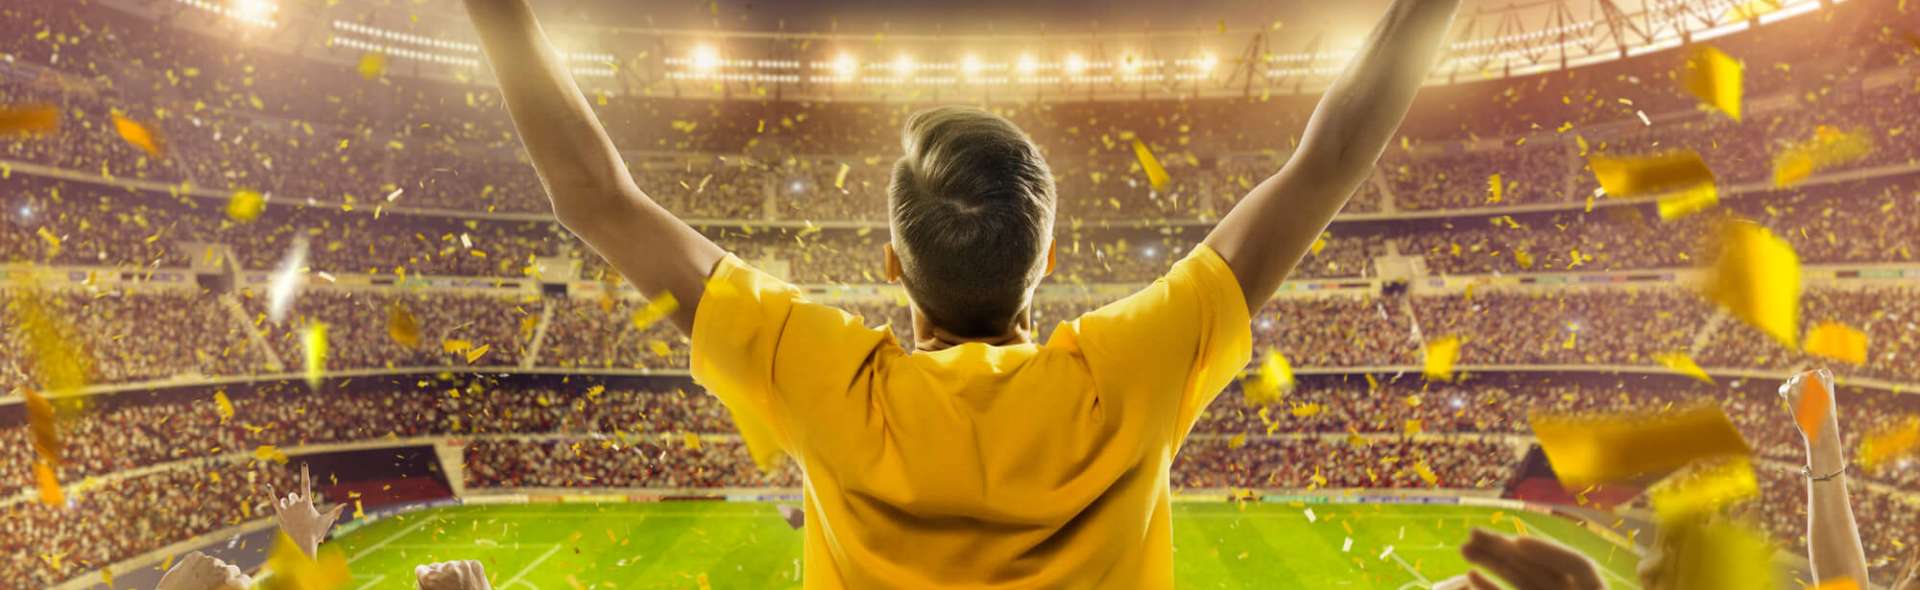 Dia Nacional do Futebol: curiosidades do esporte no Brasil